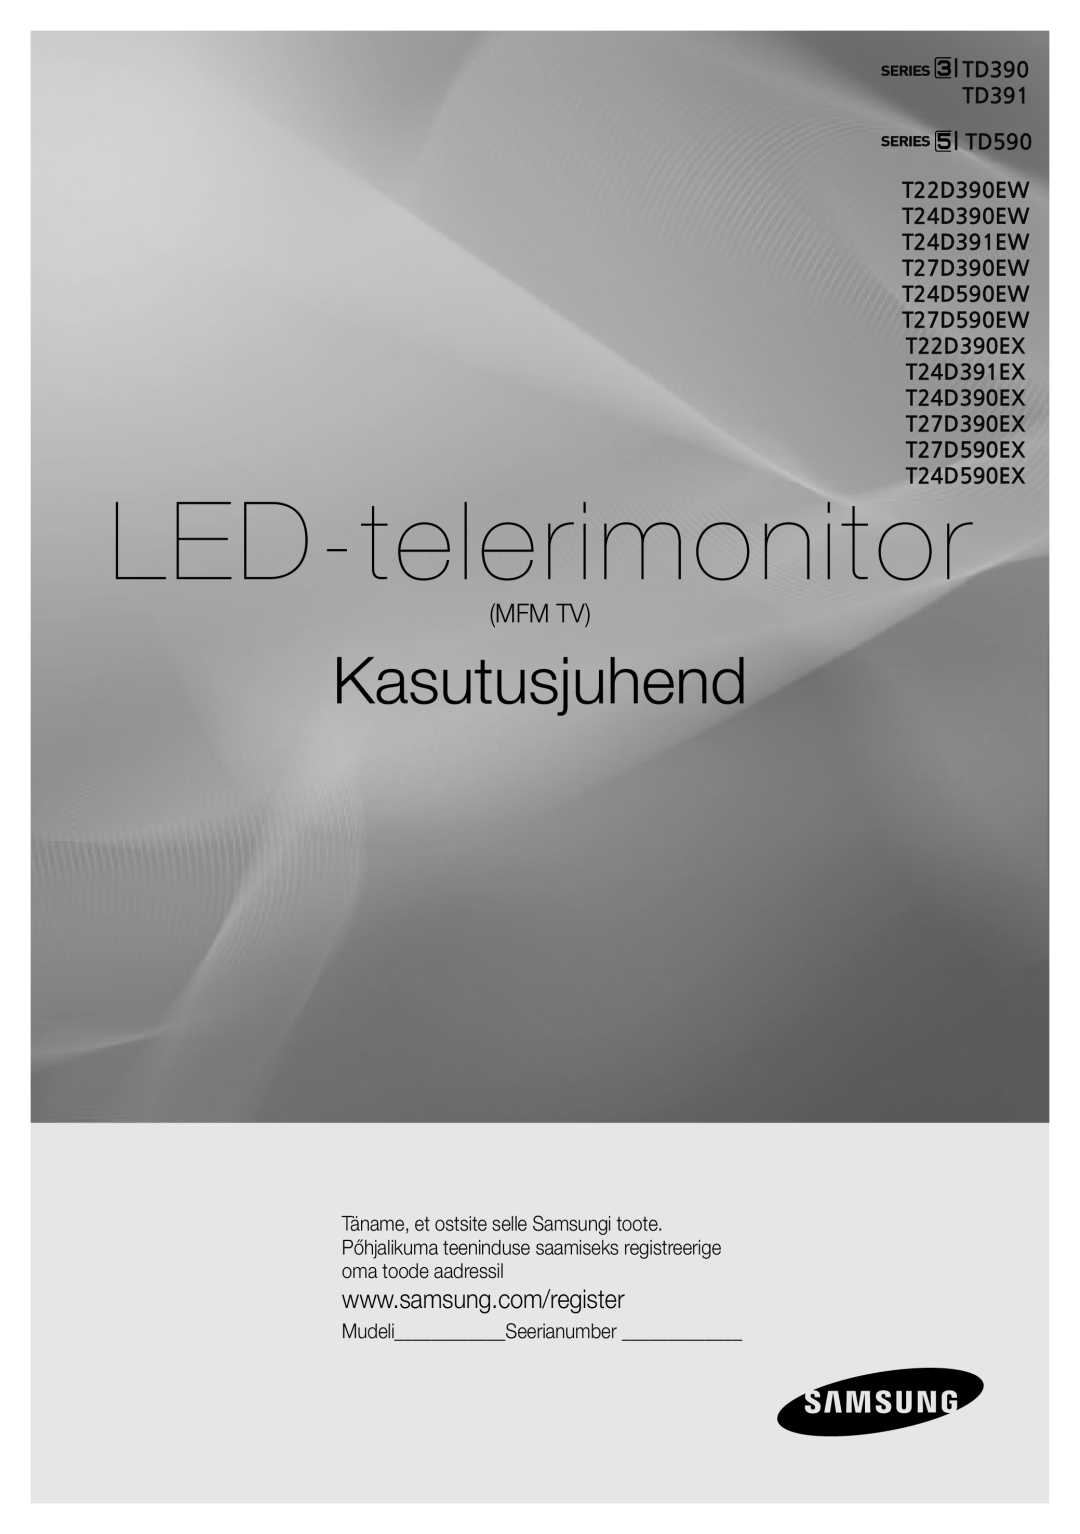 Samsung LT24D391EW/EN, LT27D390EW/EN, LT24D590EW/EN manual Mfm Tv, Modèle N de série, Ecran LED, manuel dutilisation 